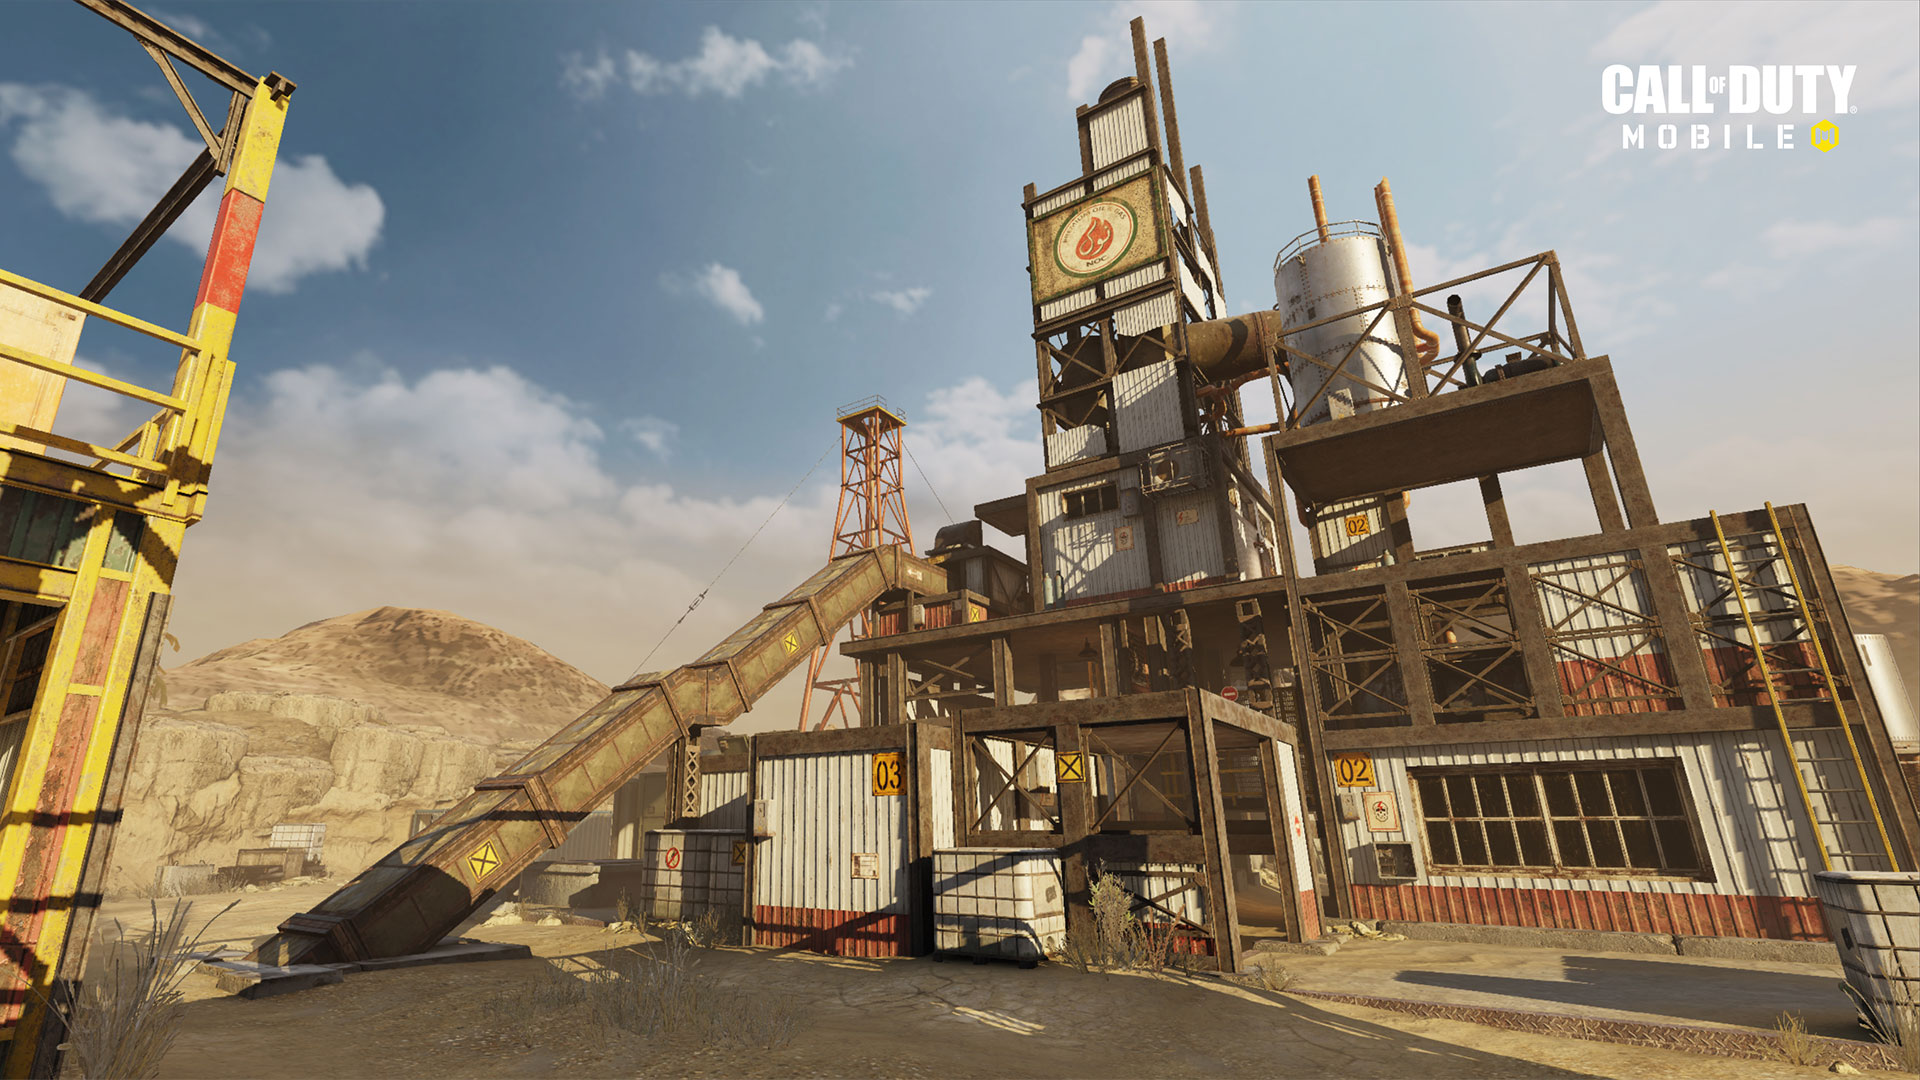 الإصدار 1.0.12 من "Call of Duty: Mobile" متاح الآن بشكل مباشر لتقديم الدعم للموسم التالي "ذات مرة في الصدأ" ، وخرائط جديدة ، وموسم جديد مصنّف ، والمزيد 178